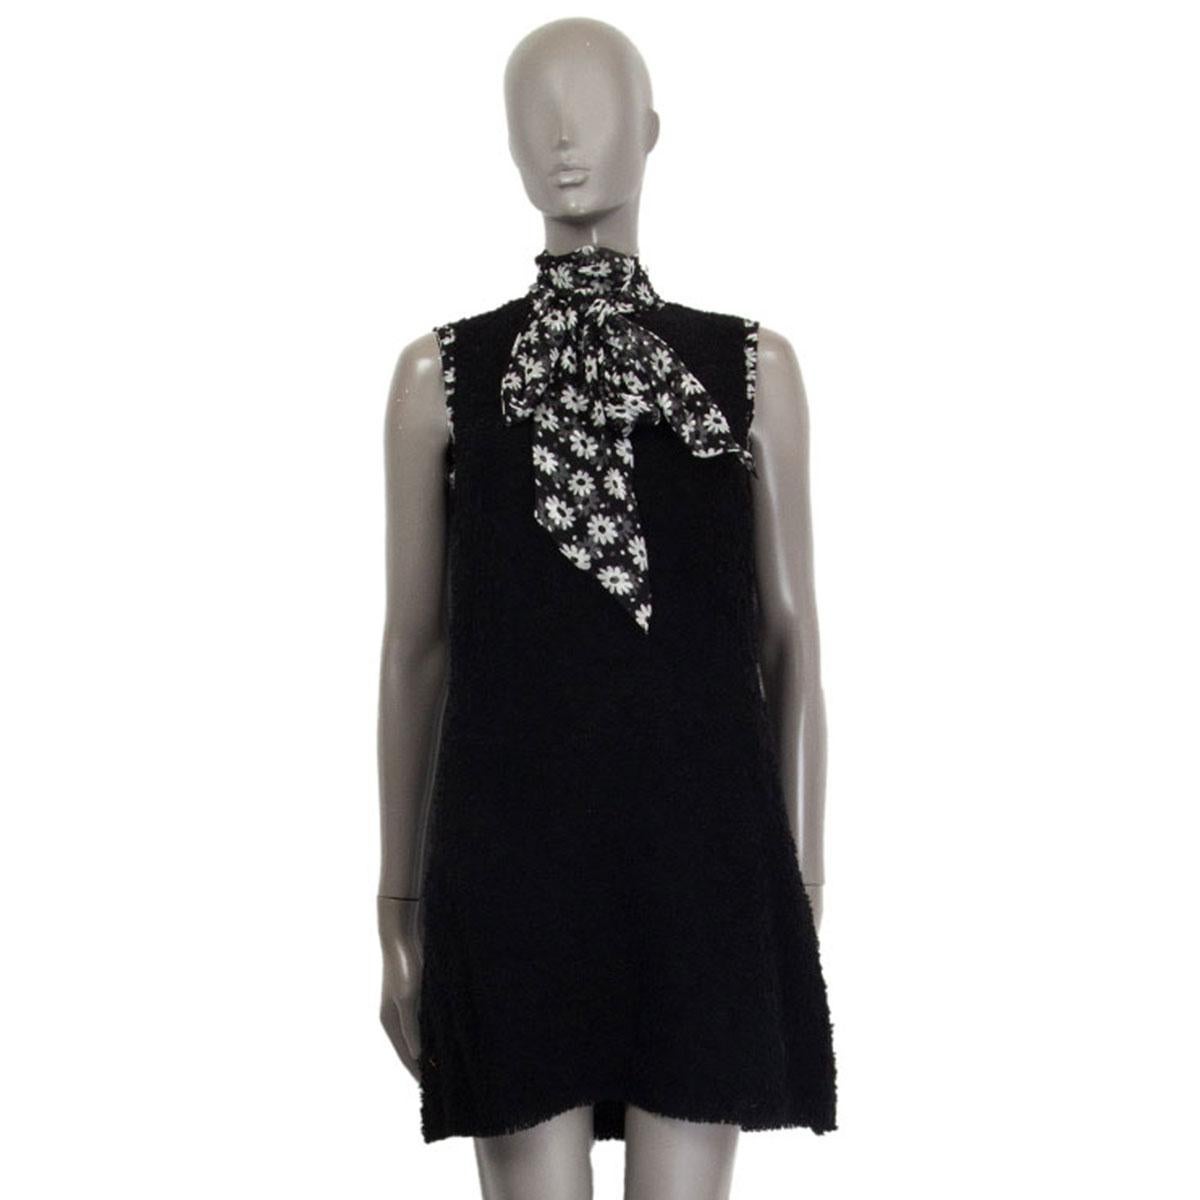 authentique robe bouclée Dolce & Gabbana en laine noire (66%), soie (20%) et polyamide (14%) avec une écharpe en soie (100%) à imprimé floral noir et blanc à lier autour du cou et à l'ourlet de l'emmanchure. Se ferme avec une fermeture à glissière